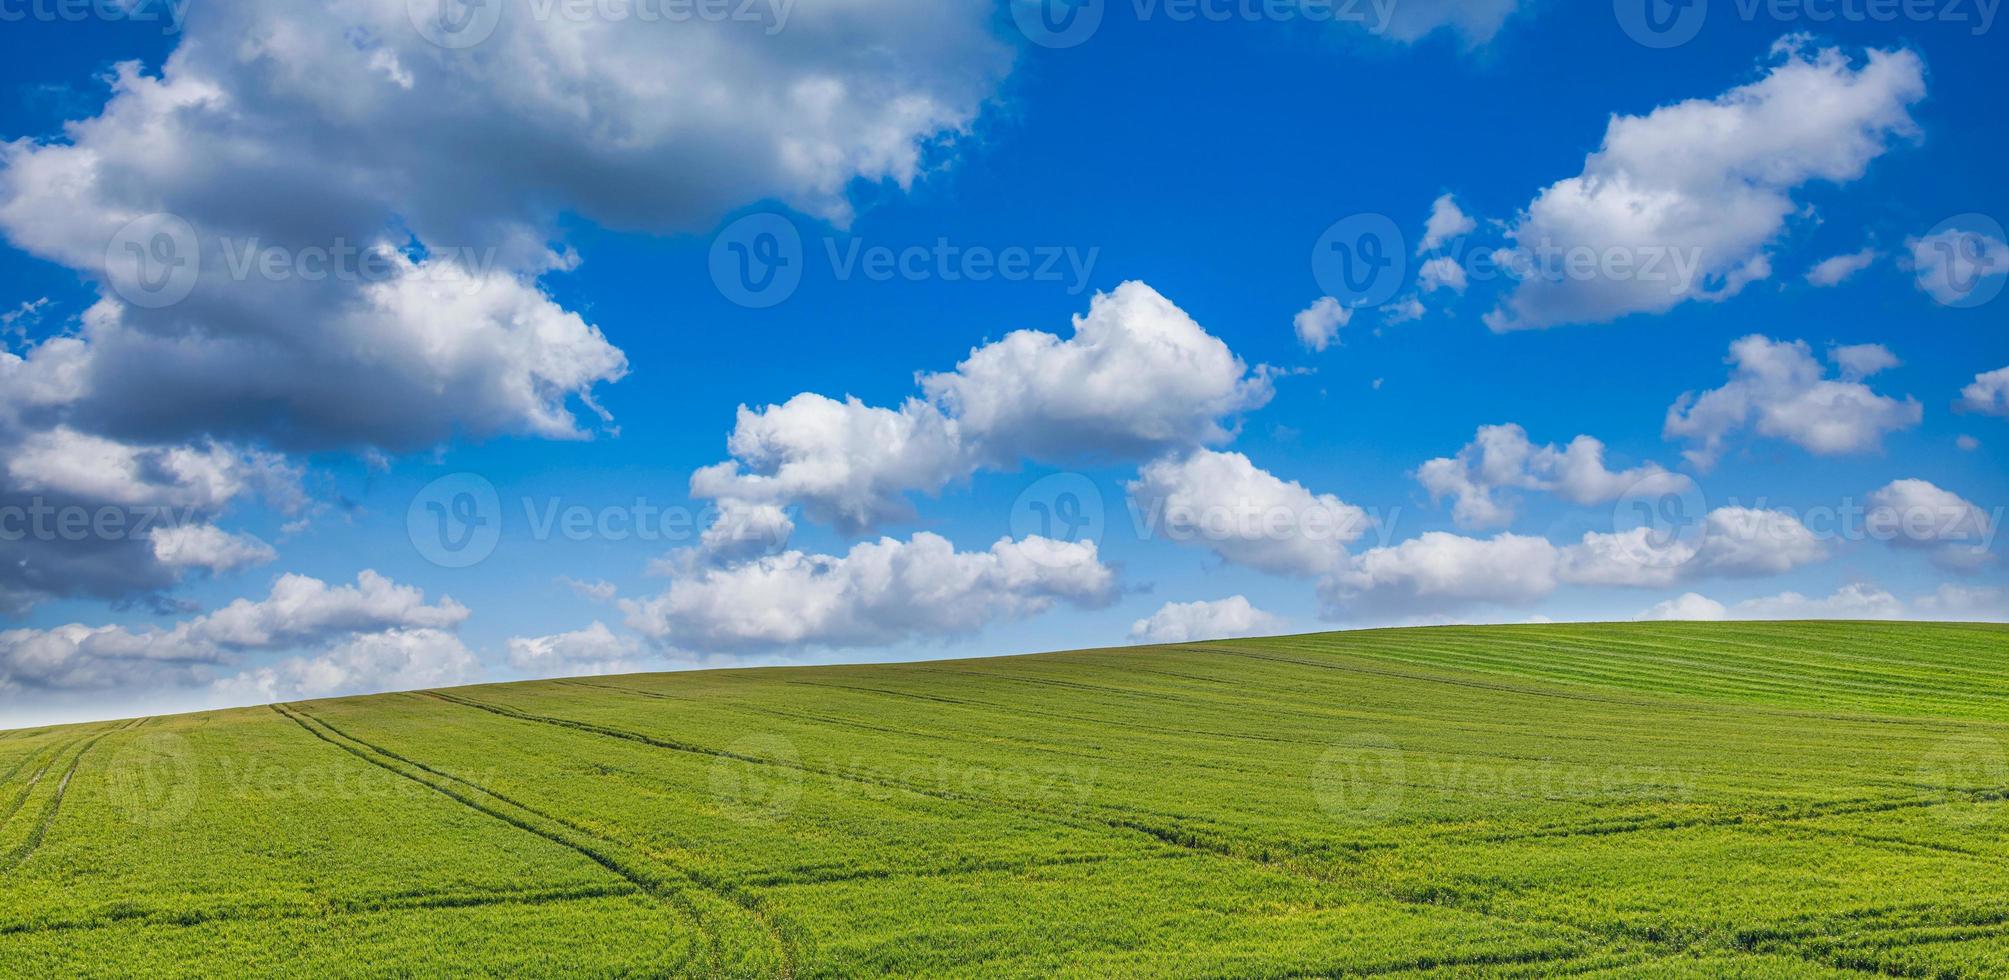 glücklicher blauer himmel, horizont und landwirtschaftliche felder. ruhige frühlingssommernaturlandschaft. idyllischer landwirtschaftshügel grüne wiese. friedlich positive energie, gute laune sonnig ländlich. entspannende friedliche Landschaft foto